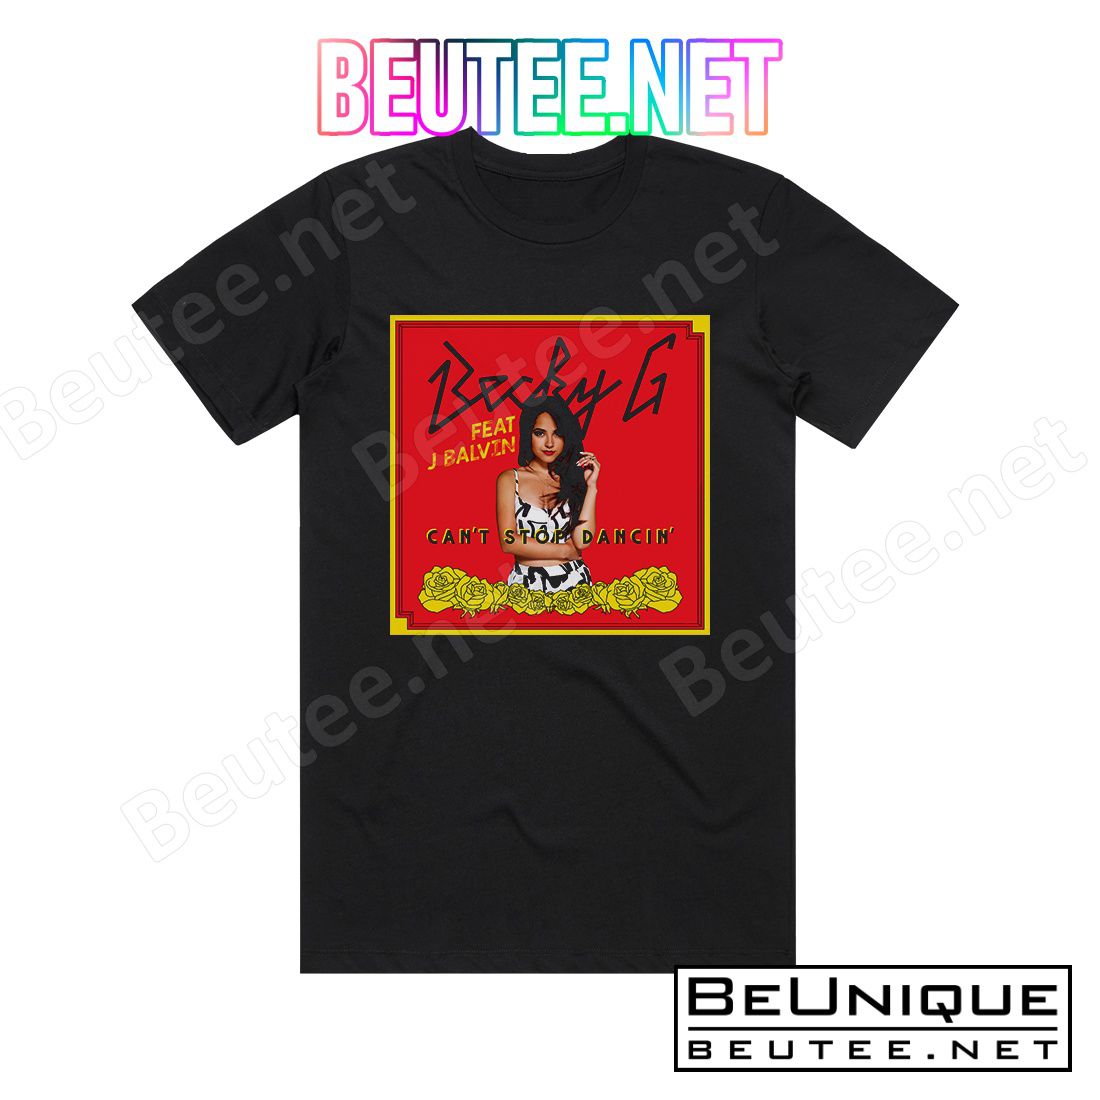 Becky G Can't Stop Dancin' Remix Album Cover T-Shirt